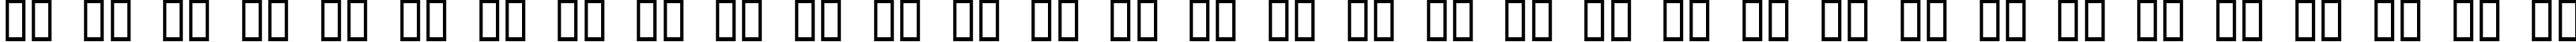 Пример написания русского алфавита шрифтом Olympus Bold